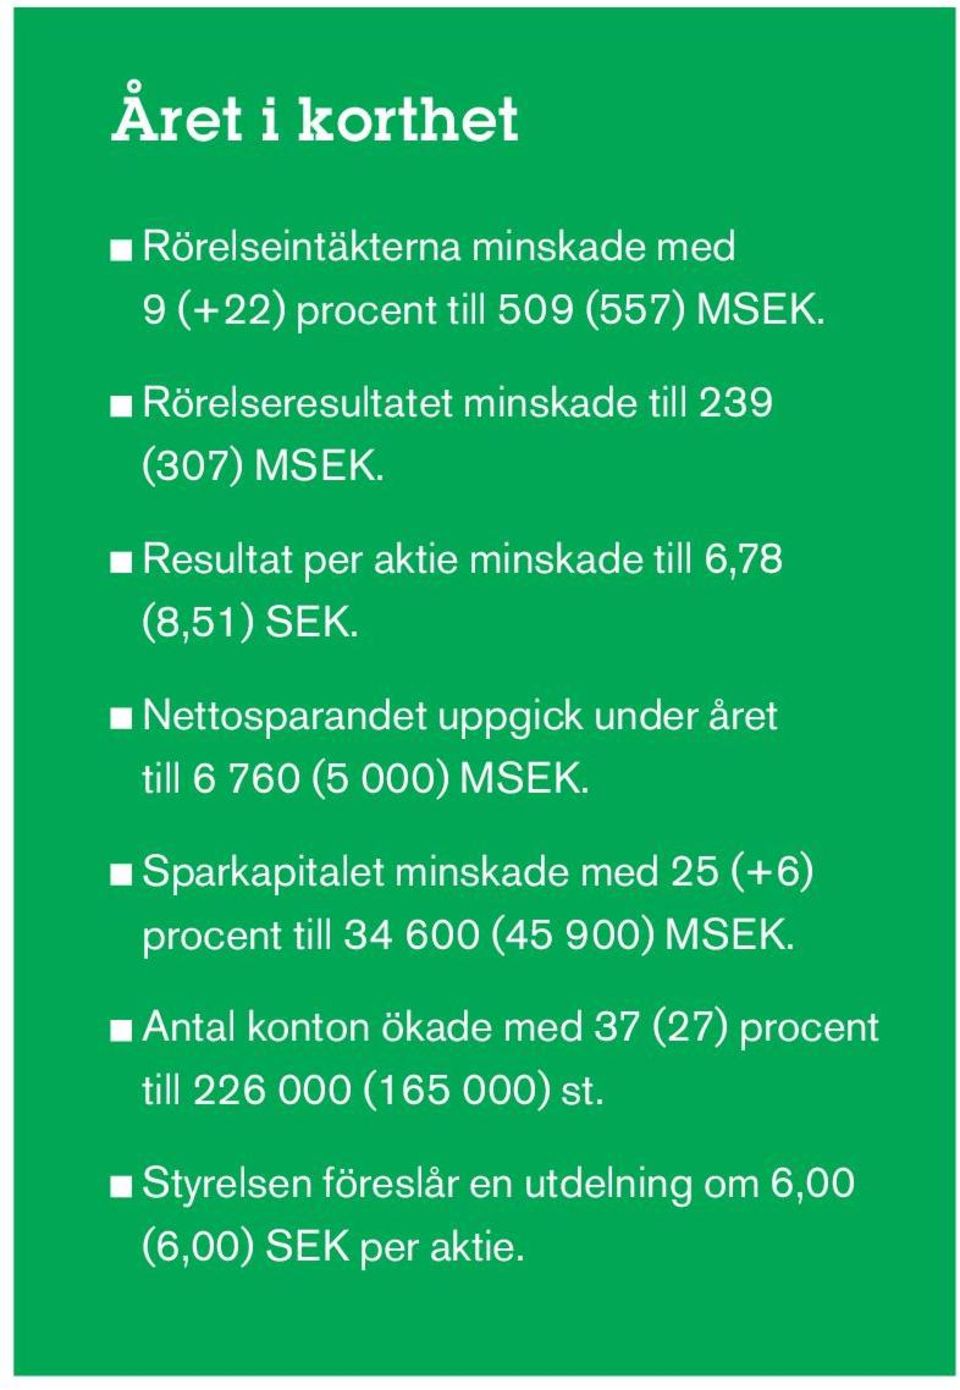 Nettosparandet uppgick under året till 6 760 (5 000) MSEK.